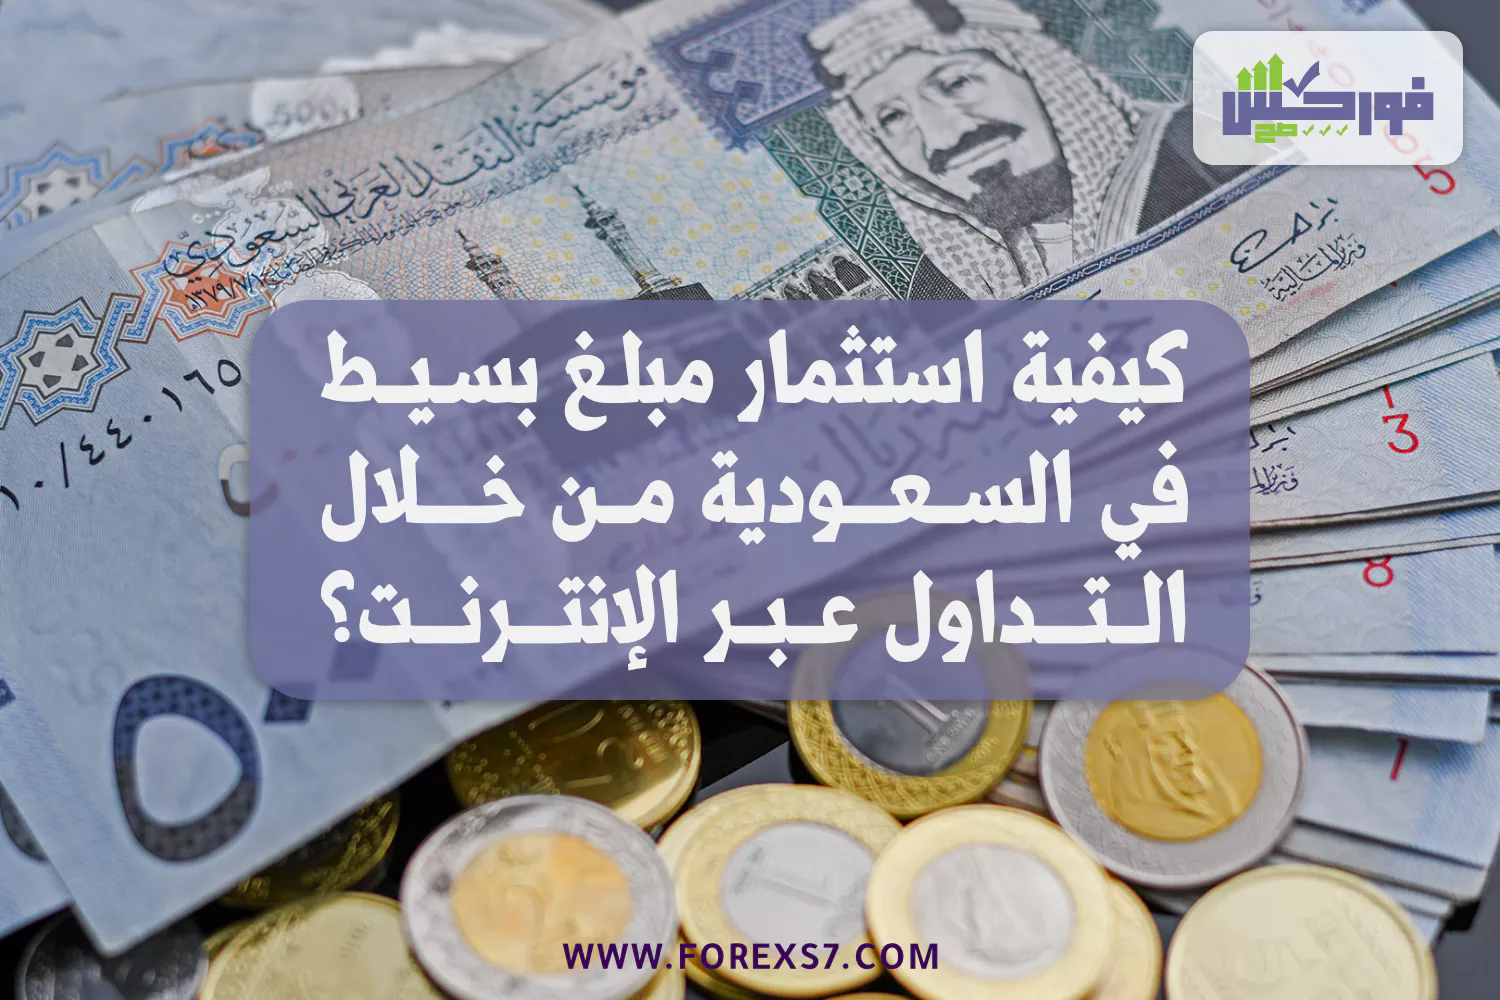 كيفية استثمار مبلغ بسيط في السعودية من خلال التداول عبر الإنترنت؟